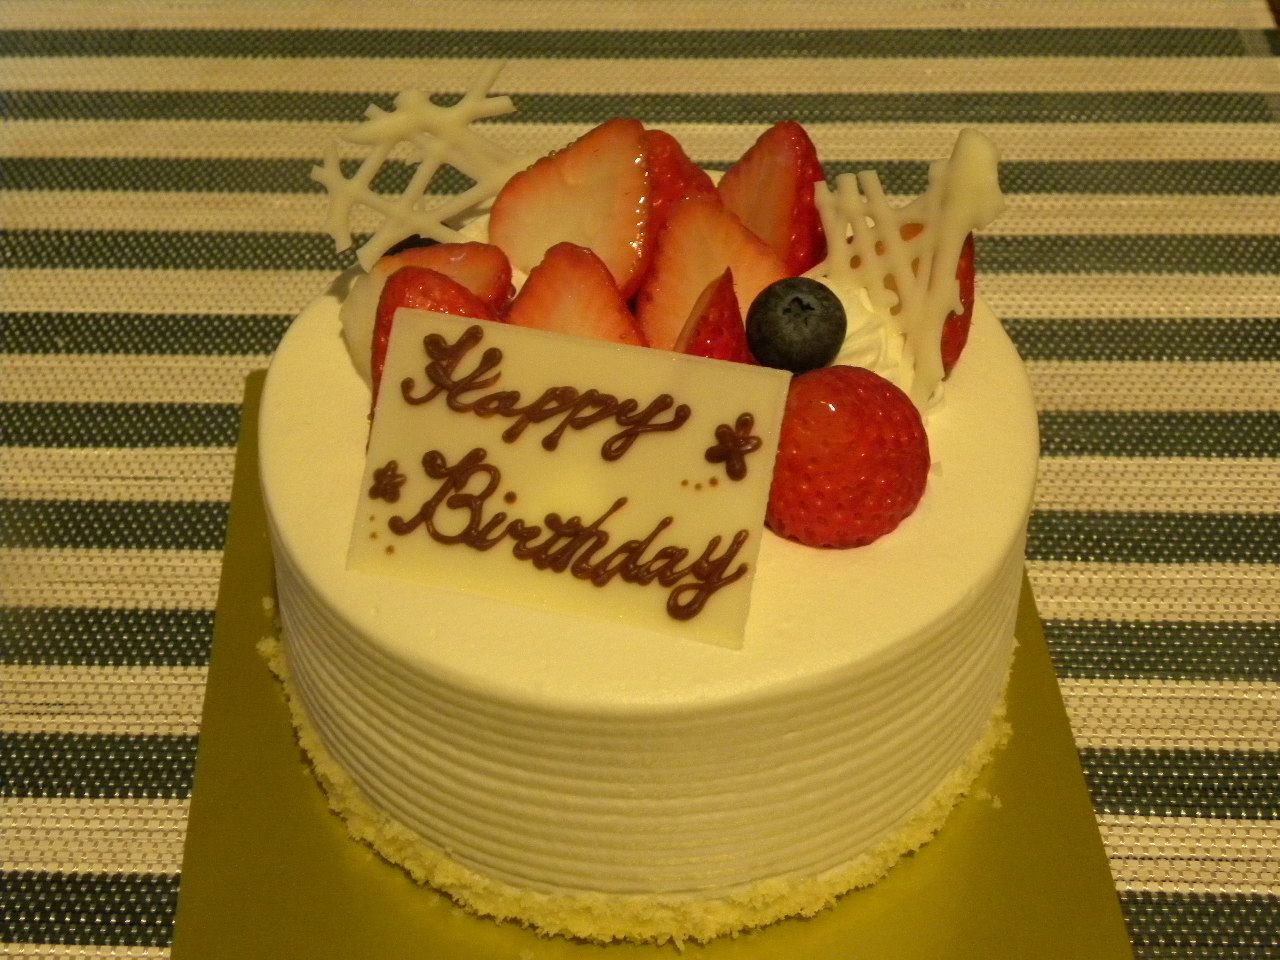 500 トップ画像食品 Hd 最新 クラブ ハリエ 誕生 日 ケーキ